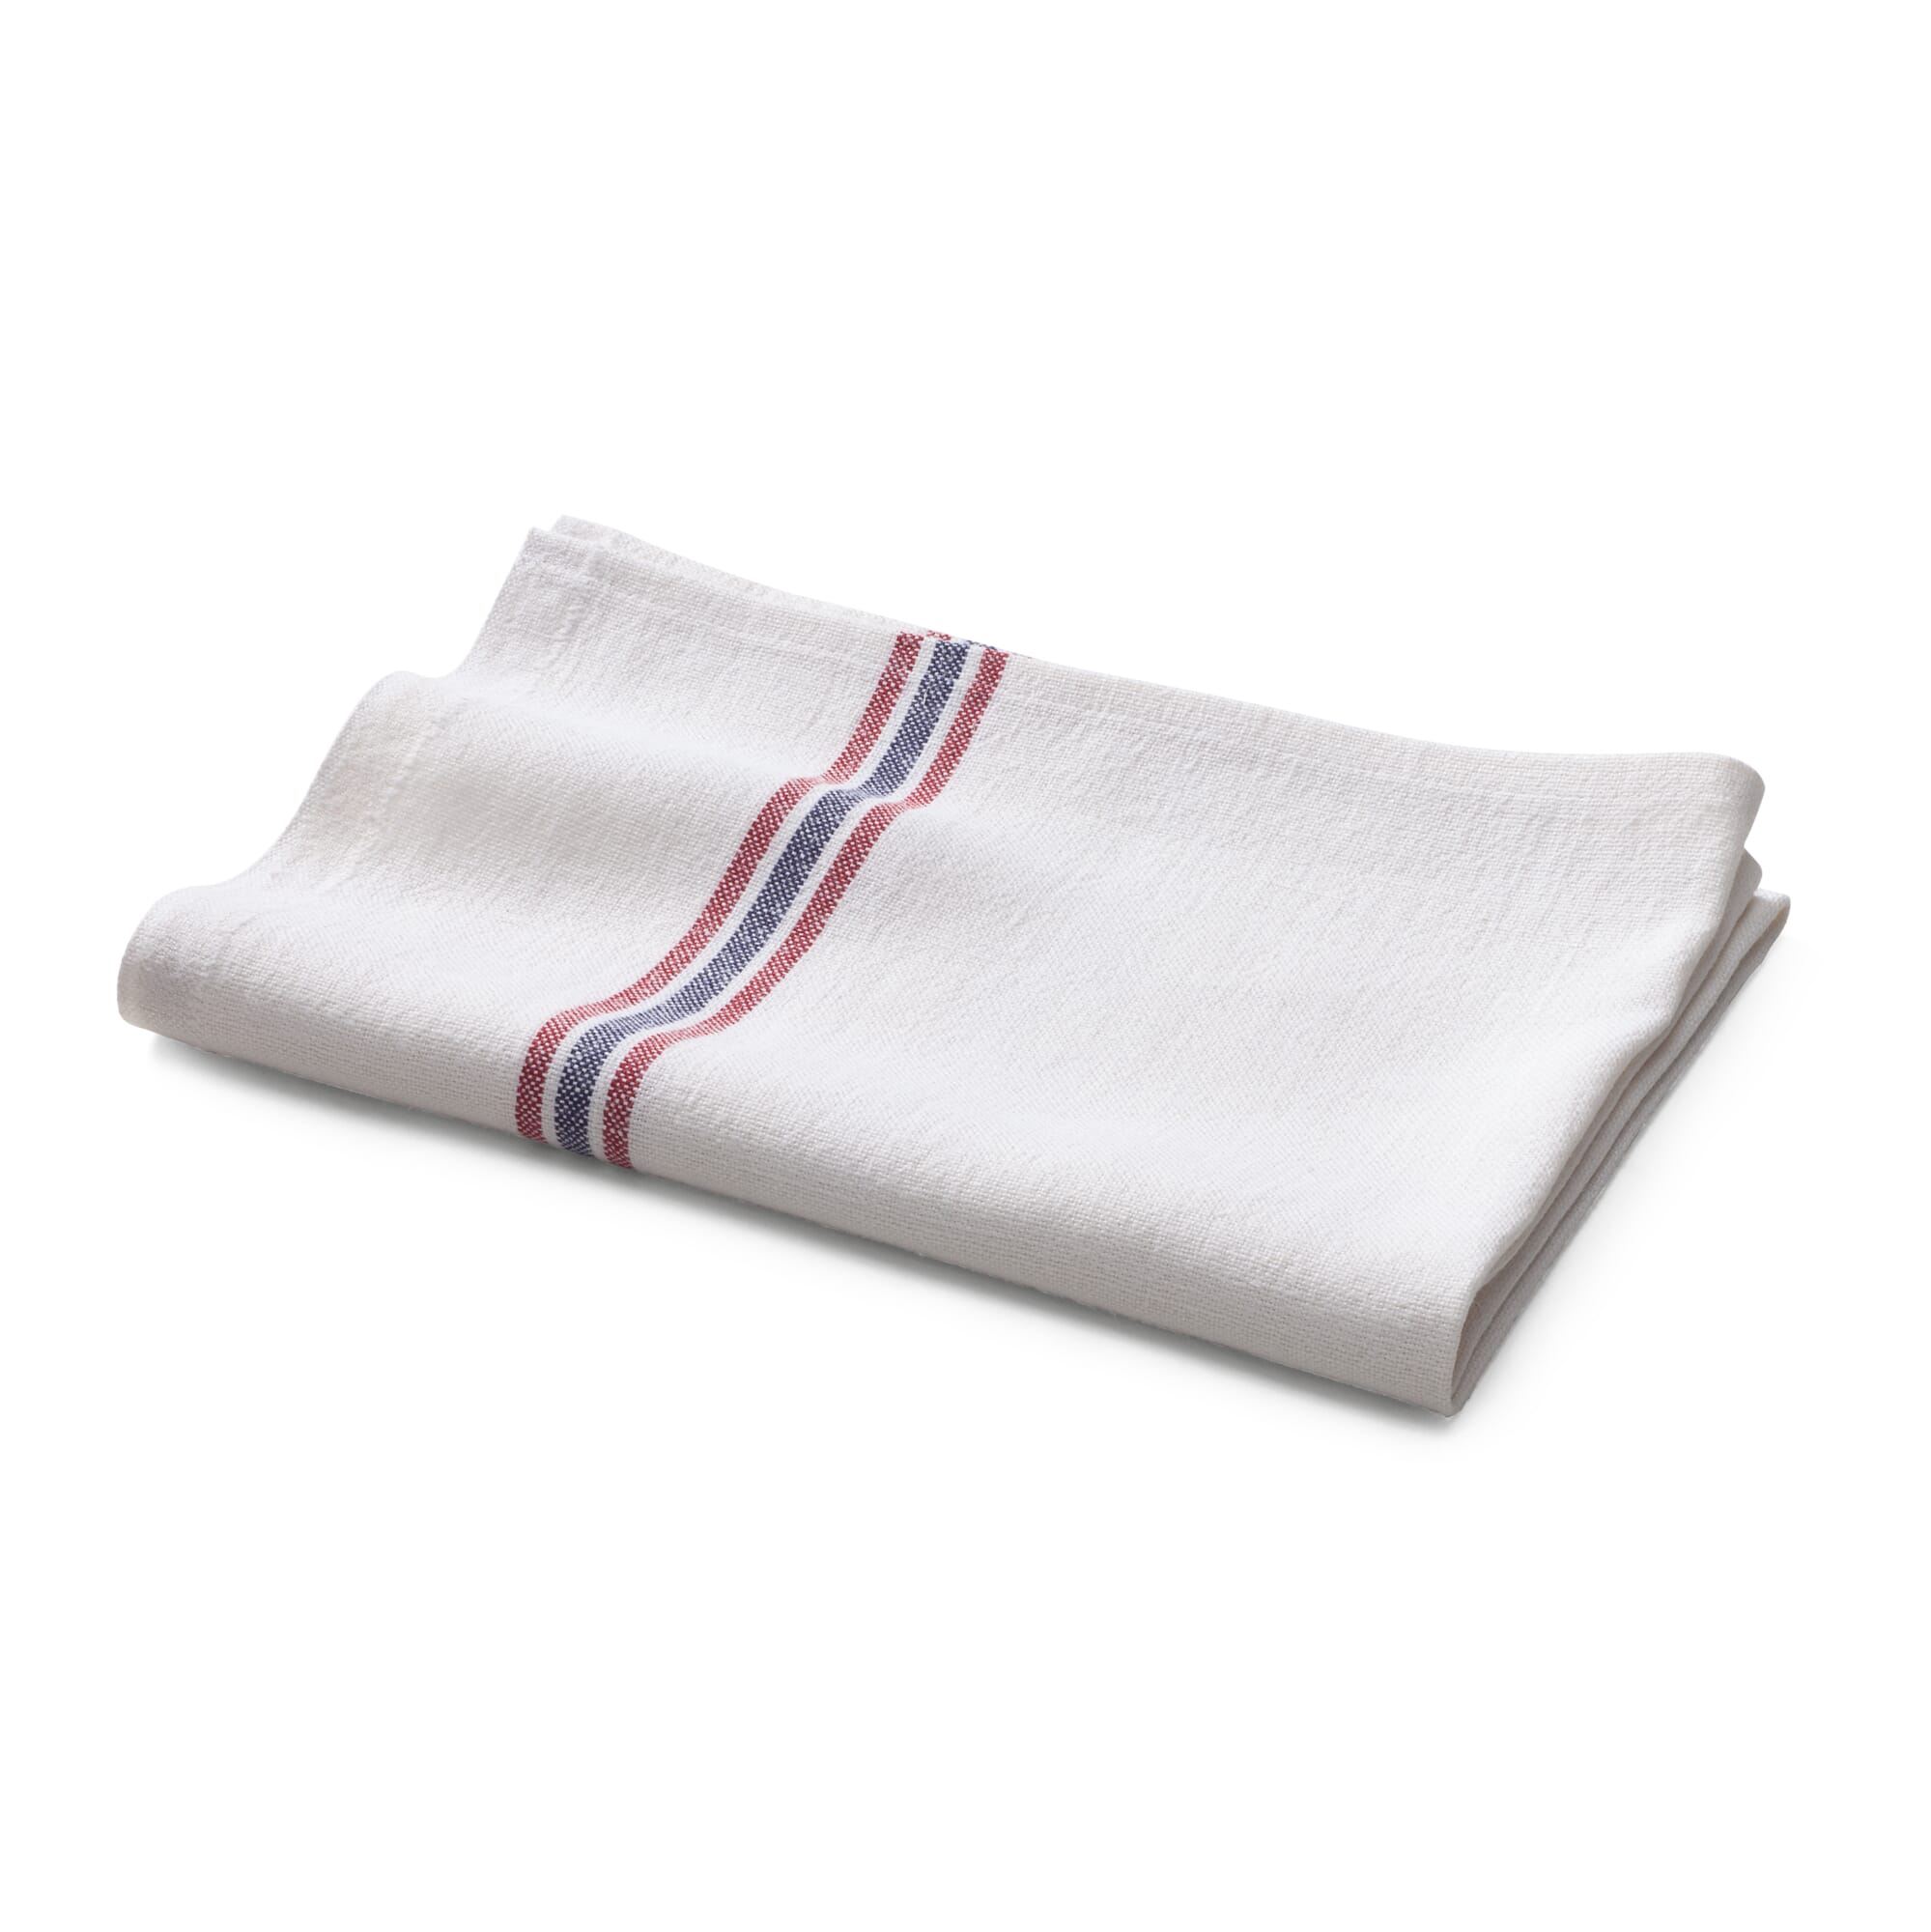 https://assets.manufactum.de/p/044/044133/44133_01.jpg/kitchen-towel-linen-stripe.jpg